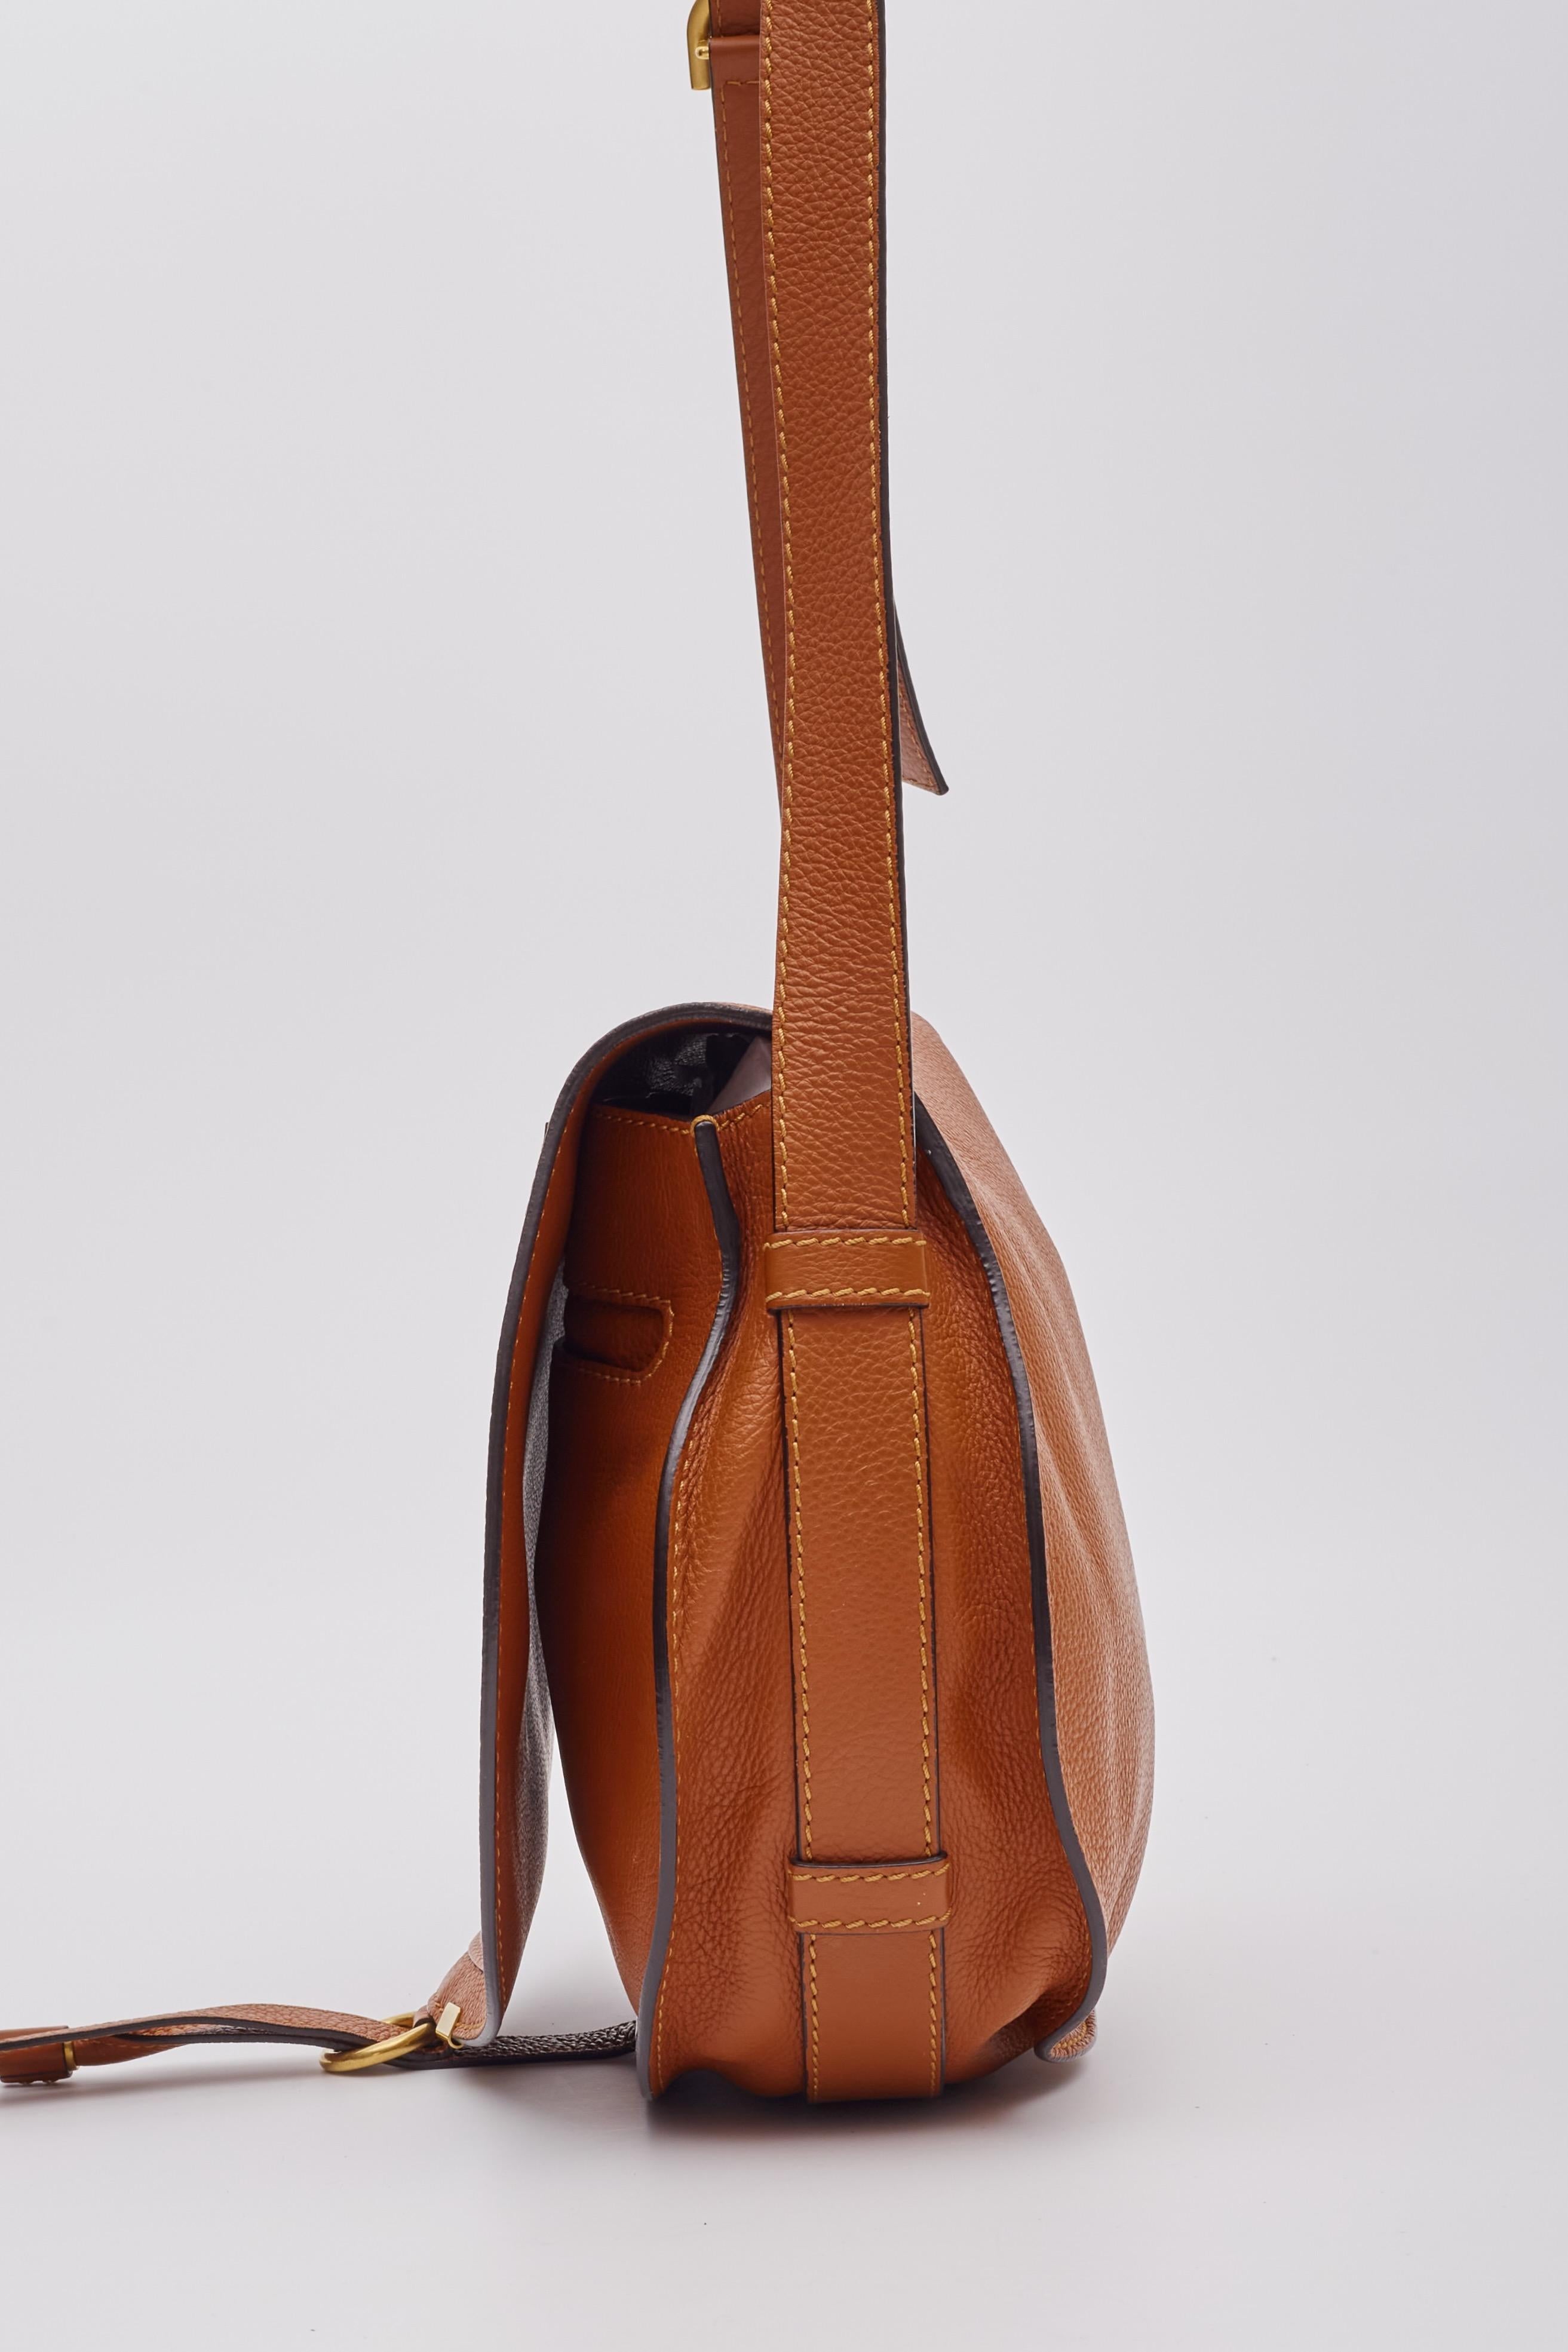 Chloe Caramel Leather Marcie Crossbody Bag Medium For Sale 2